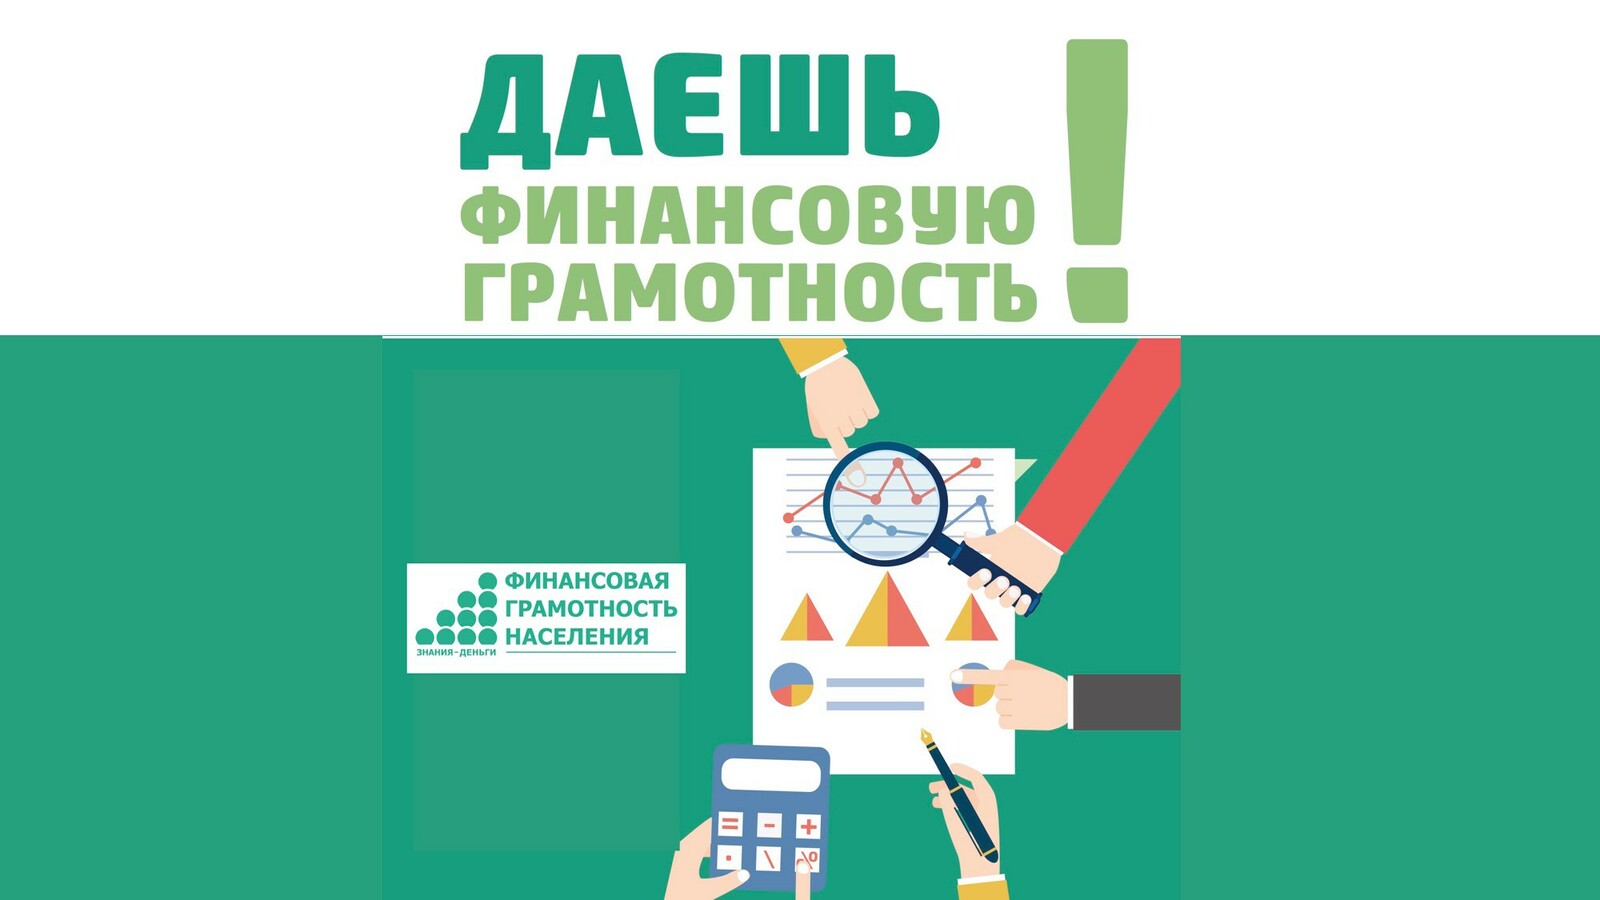 Минфин Республики Башкортостан приглашает принять участие в опросе